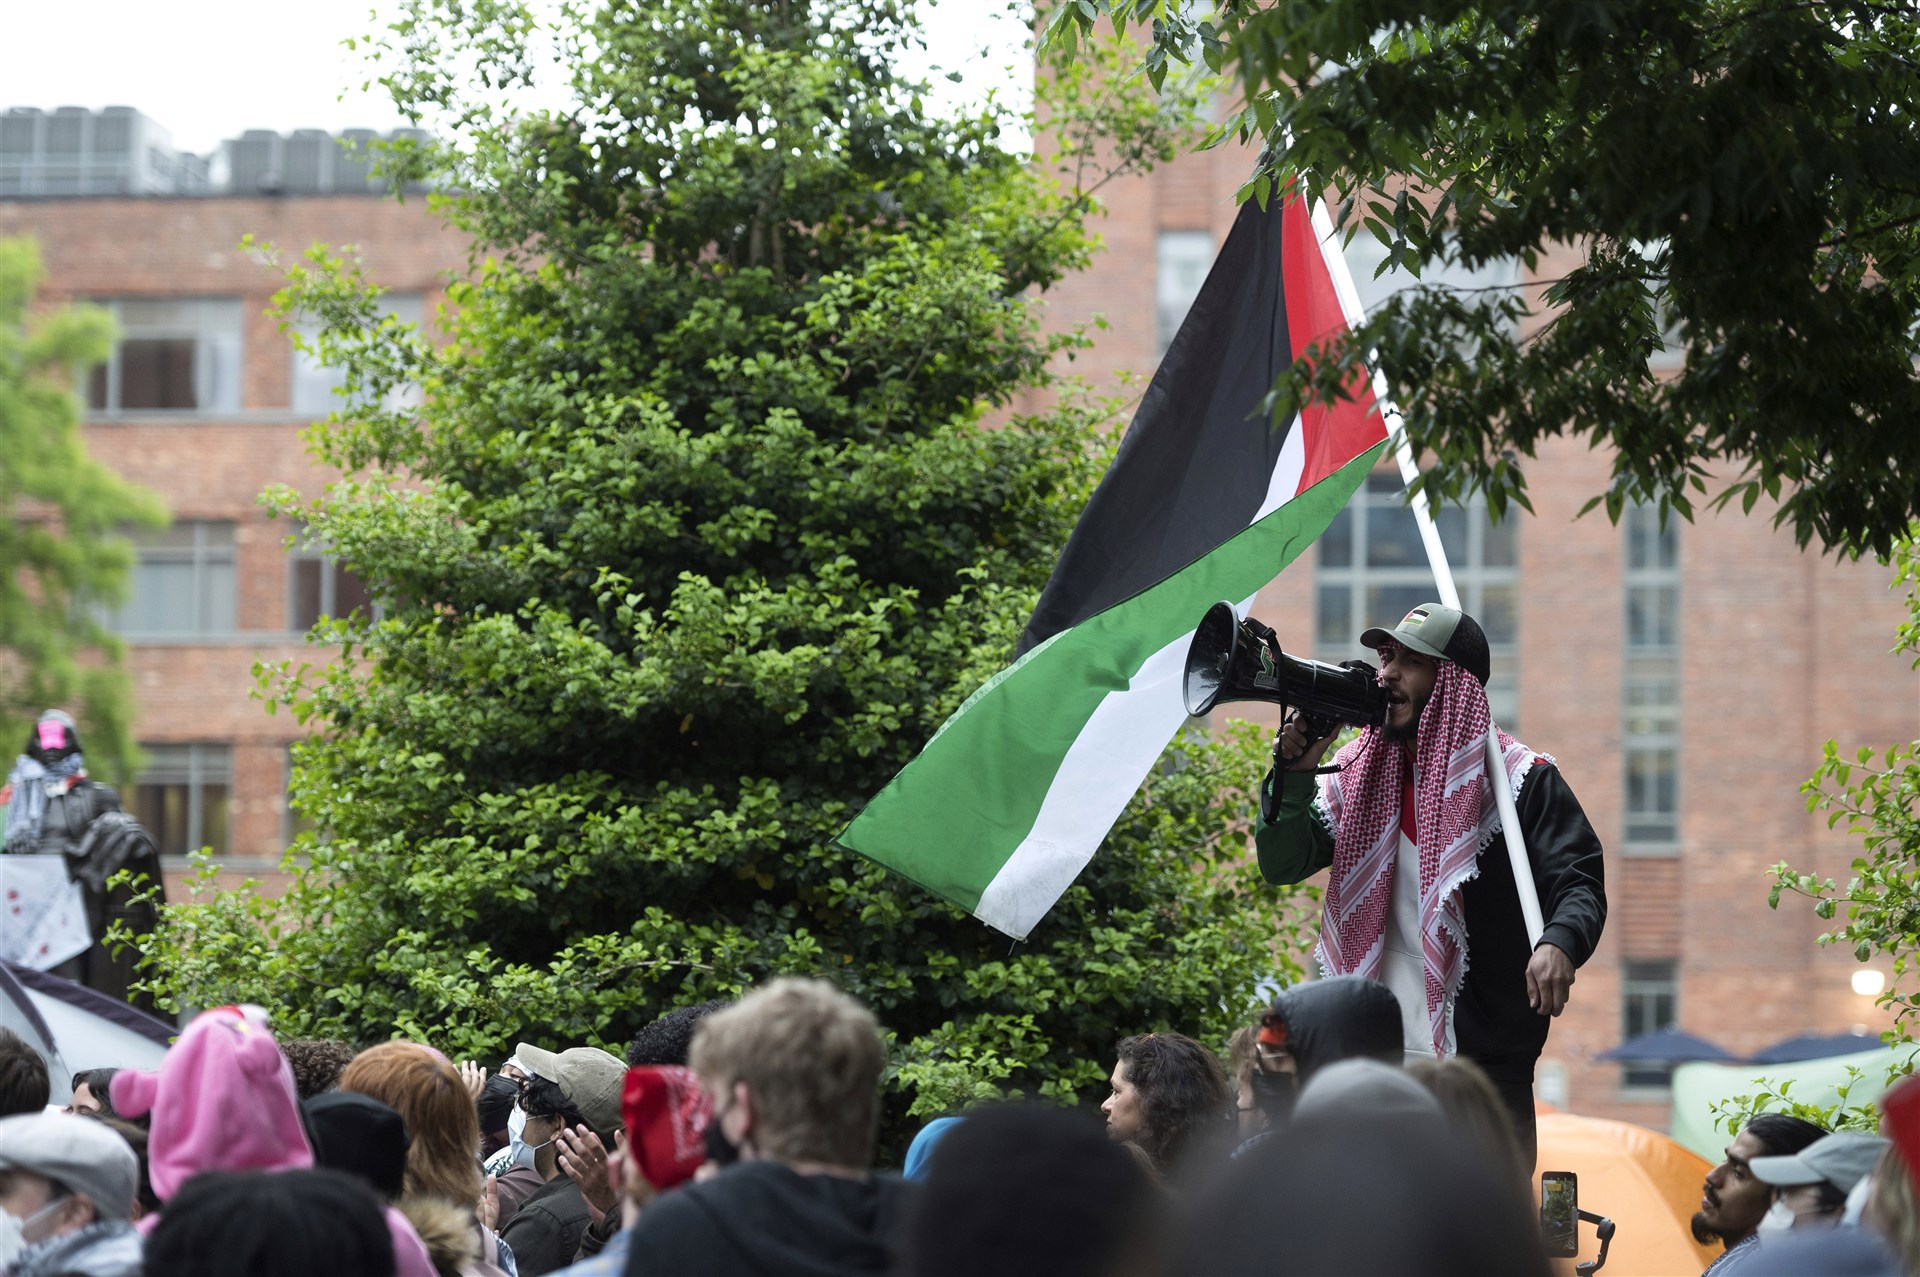 opnieuw arrestaties bij pro-palestijnse acties op universiteiten vs